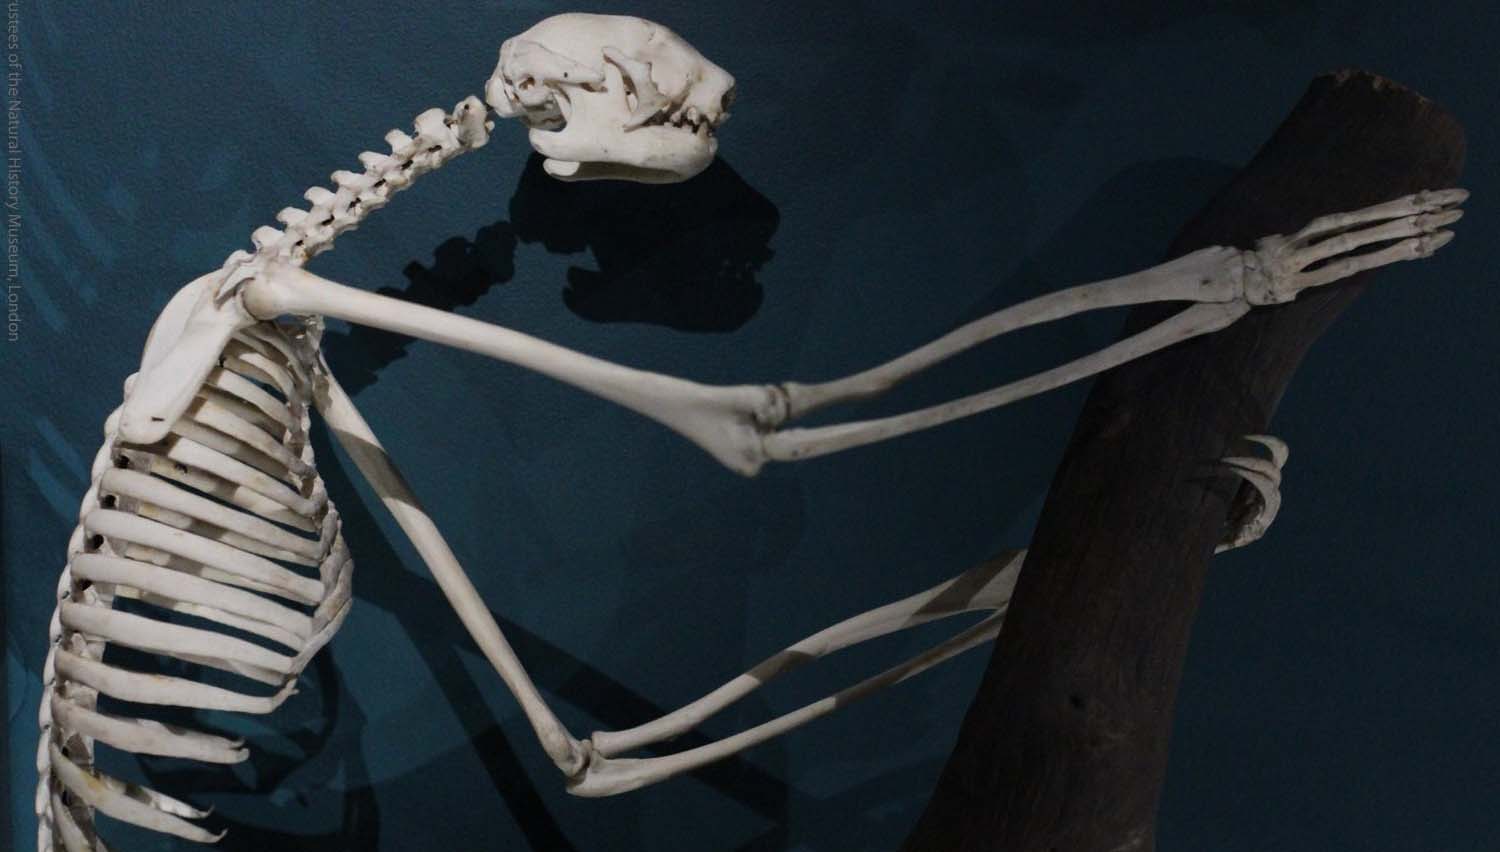 white sloth skeleton in a dark room